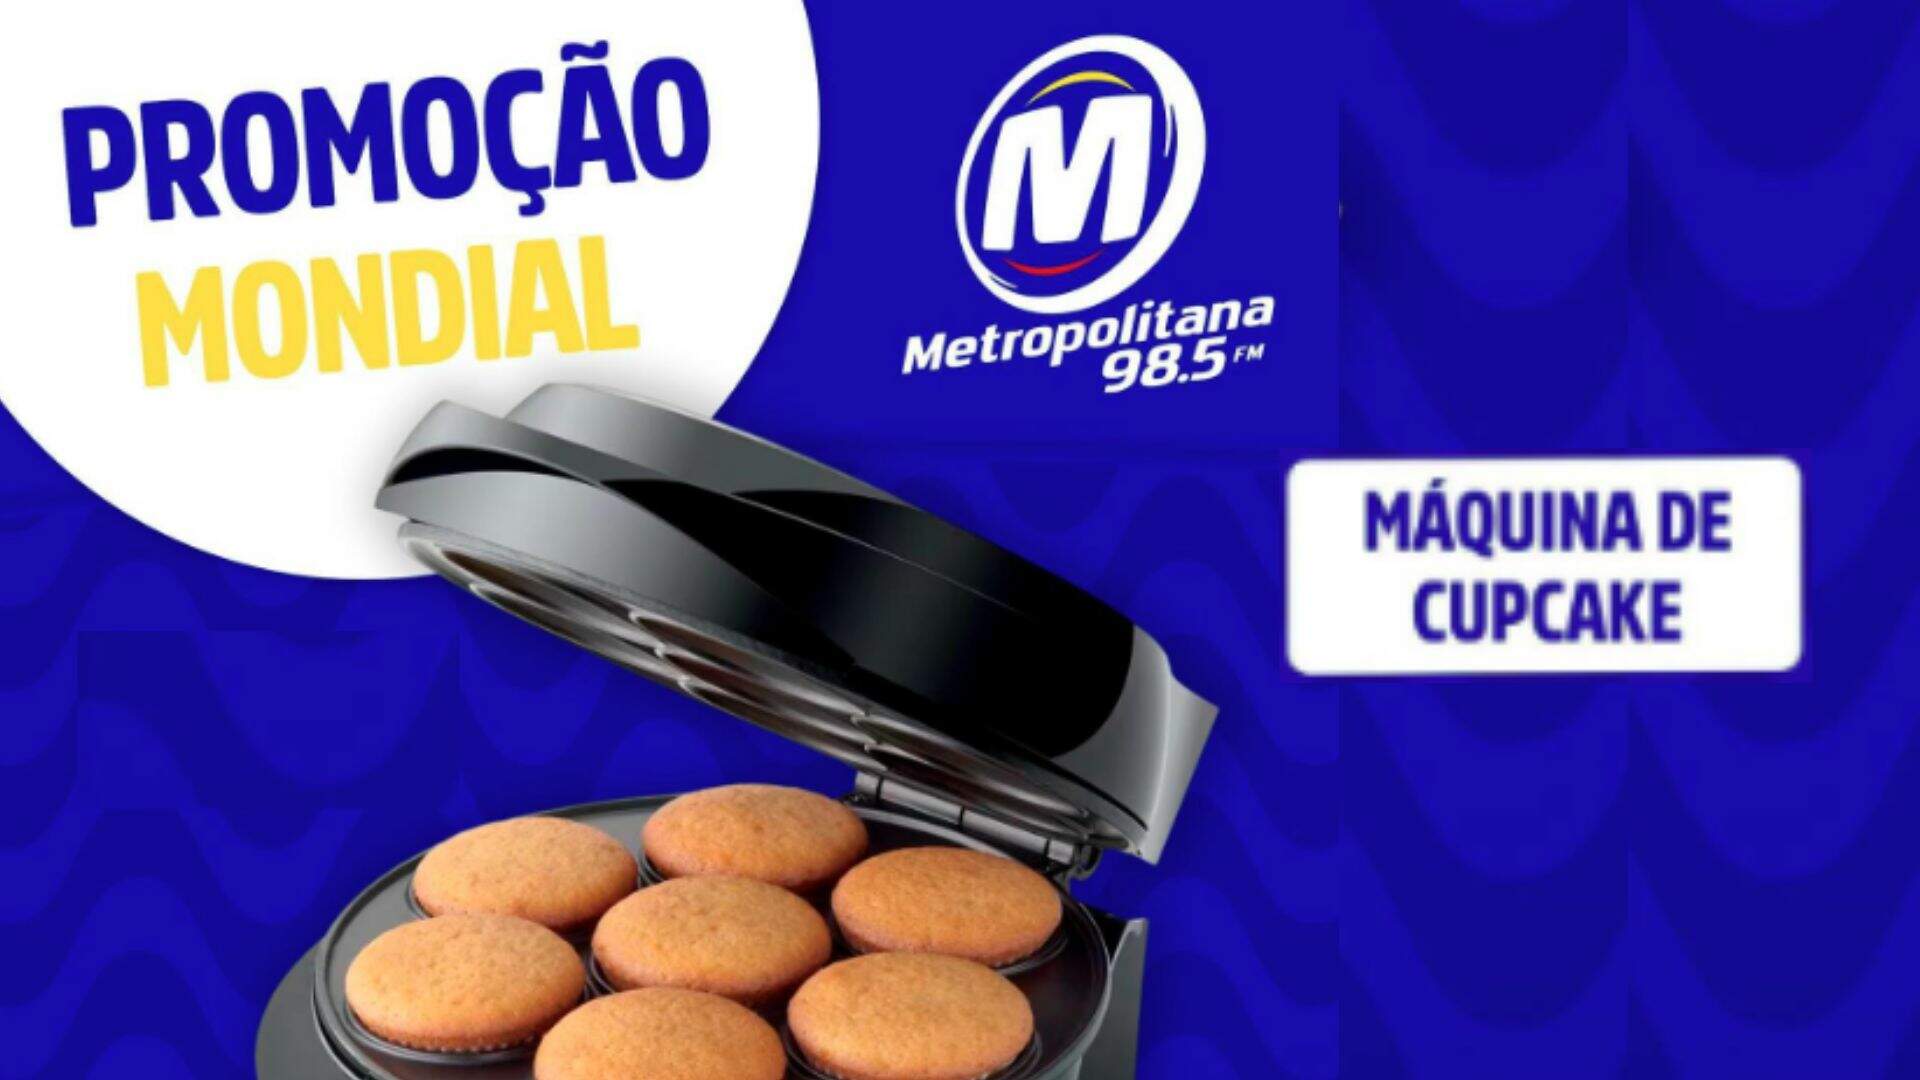 [ENCERRADA] Promoção: MÁQUINA DE CUPCAKES MONDIAL NA METROPOLITANA FM - Metropolitana FM